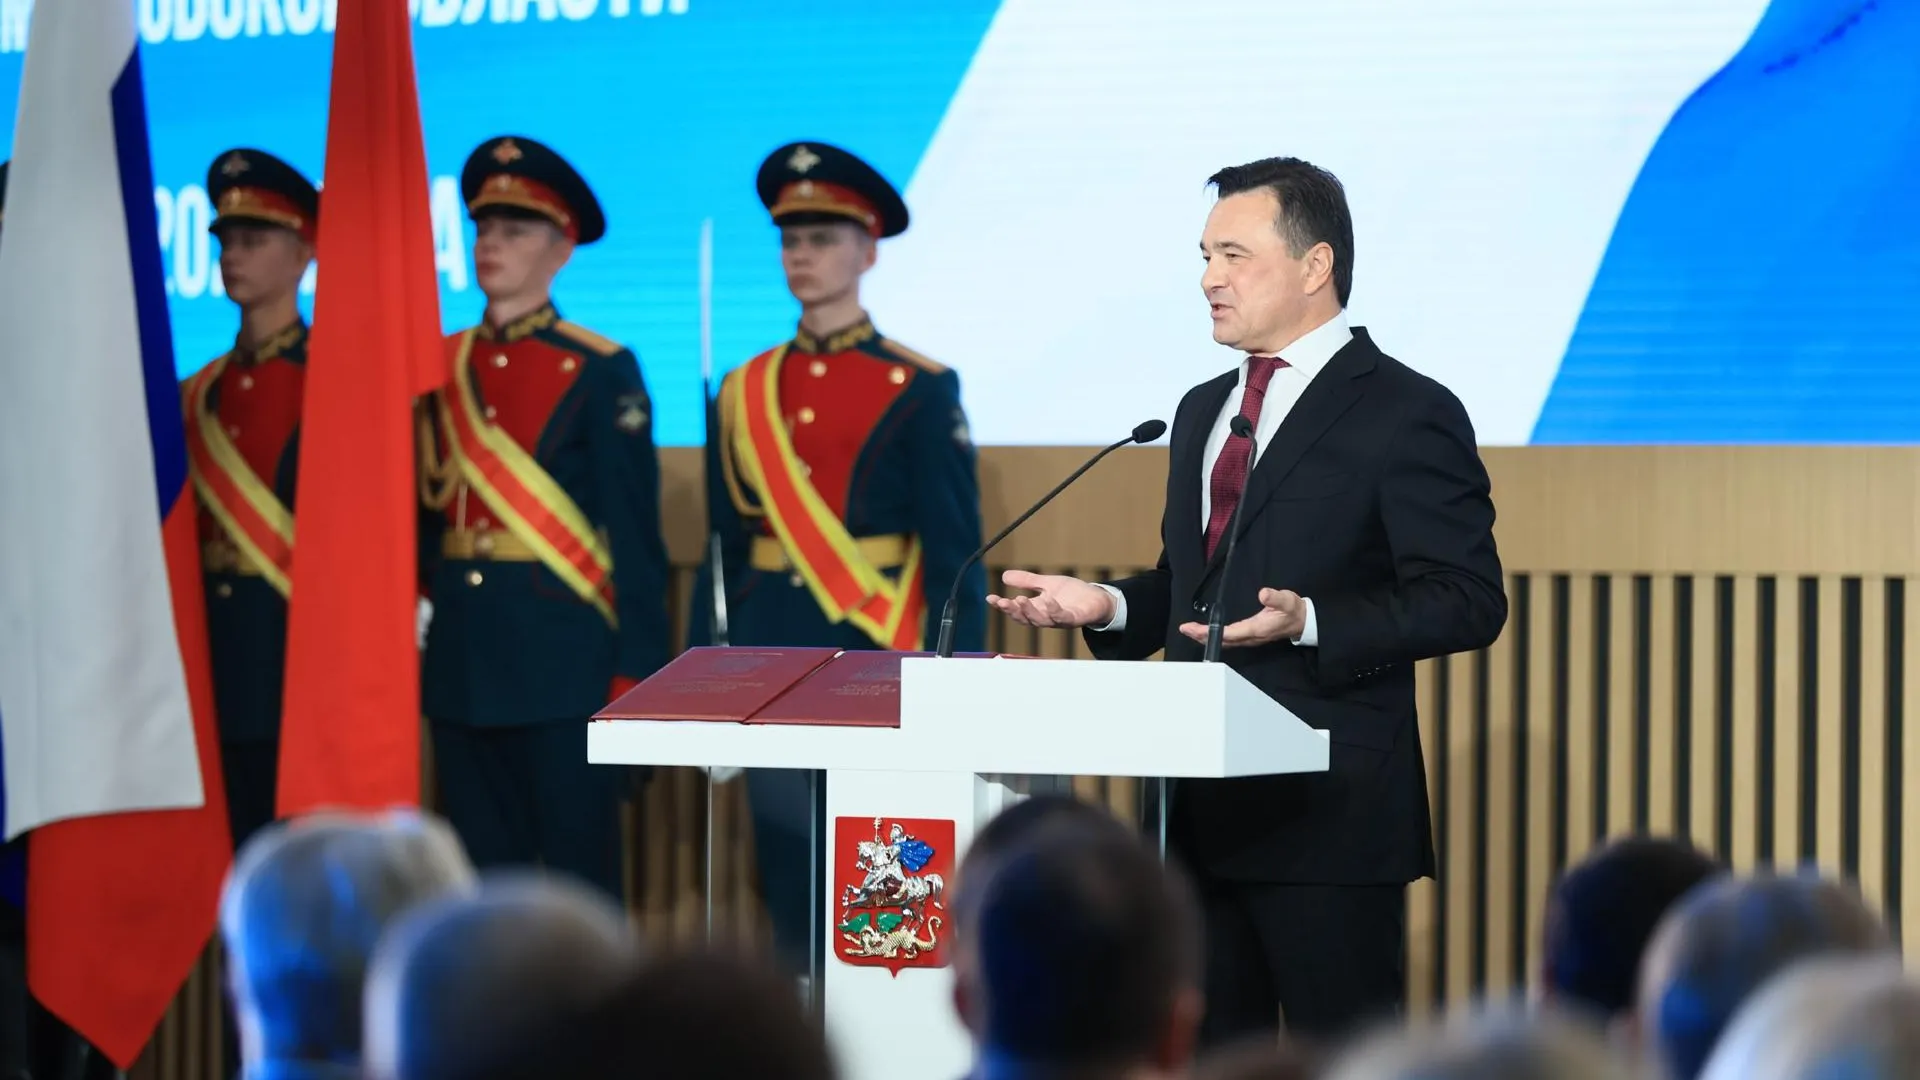 Полномочный представитель президента России Щеголев поздравил Воробьева со вступлением в должность губернатора